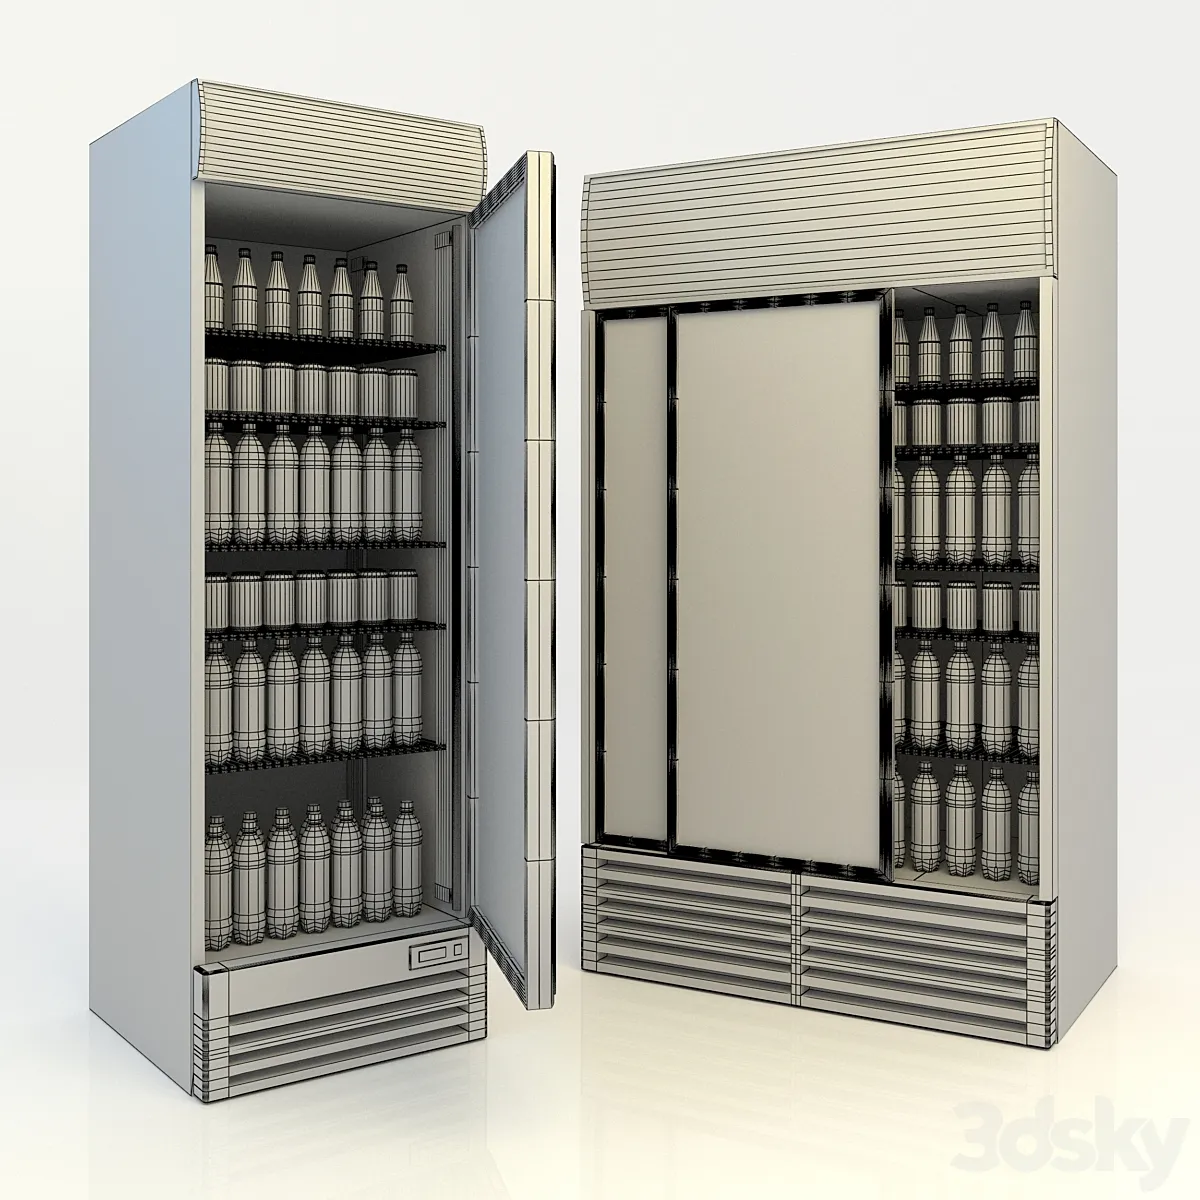 مدل سه بعدی یخچال فروشگاه 2 - 4